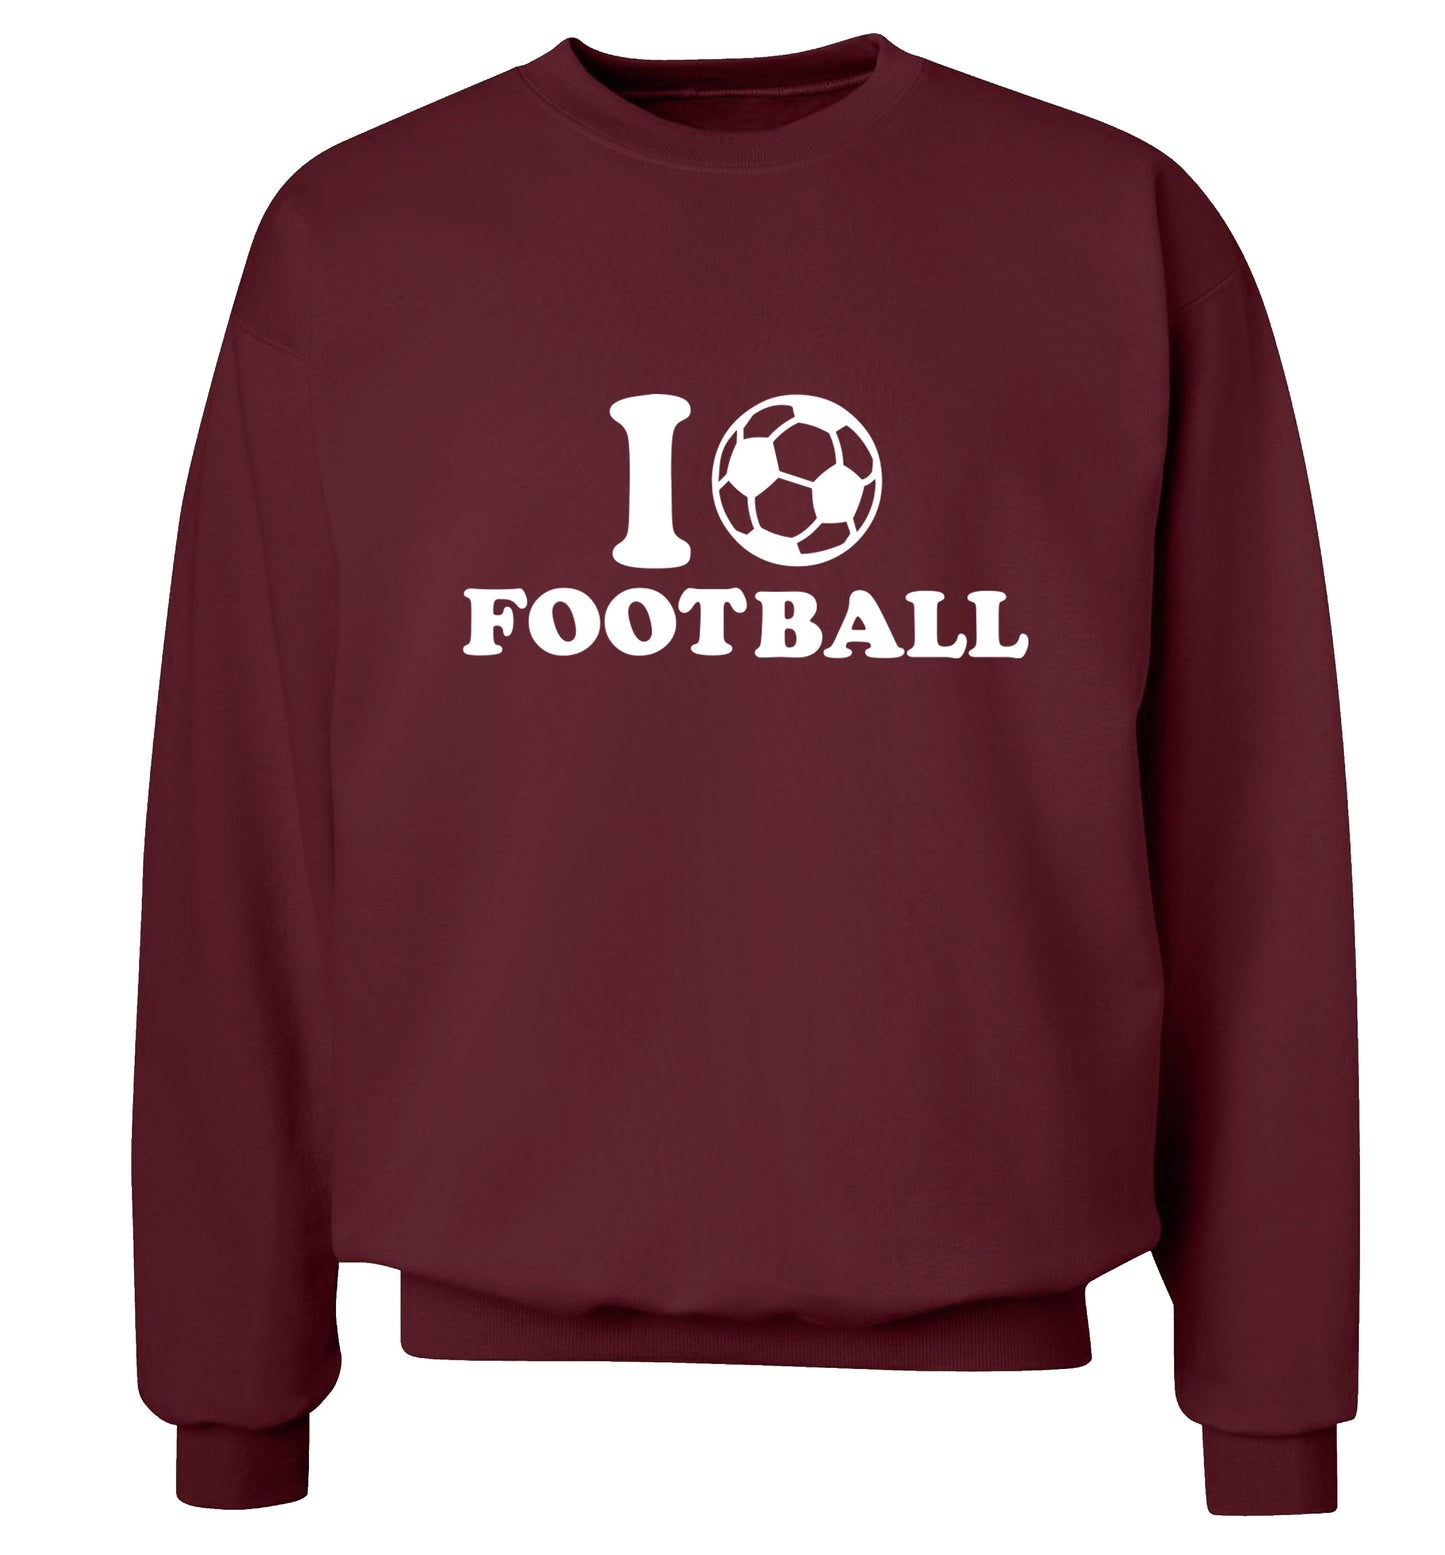 I love football Adult's unisexmaroon Sweater 2XL